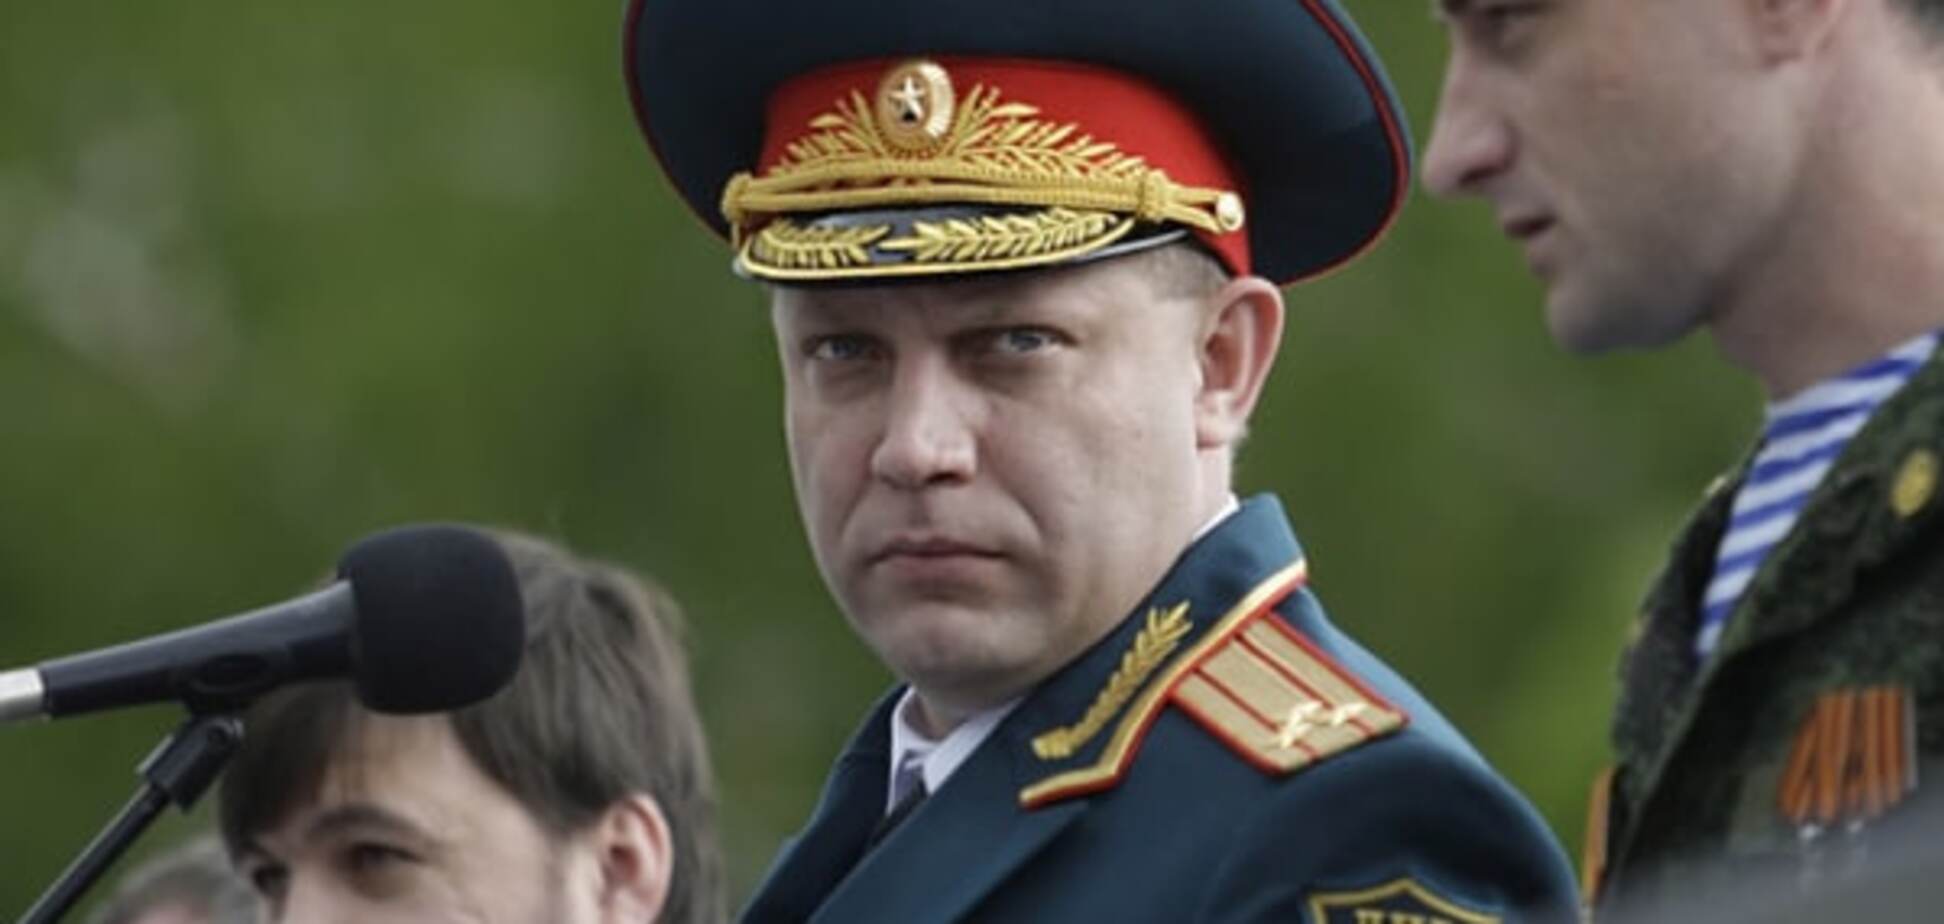 Кінець перемир'ю: Захарченко віддав наказ терористам на застосування будь-яких видів зброї